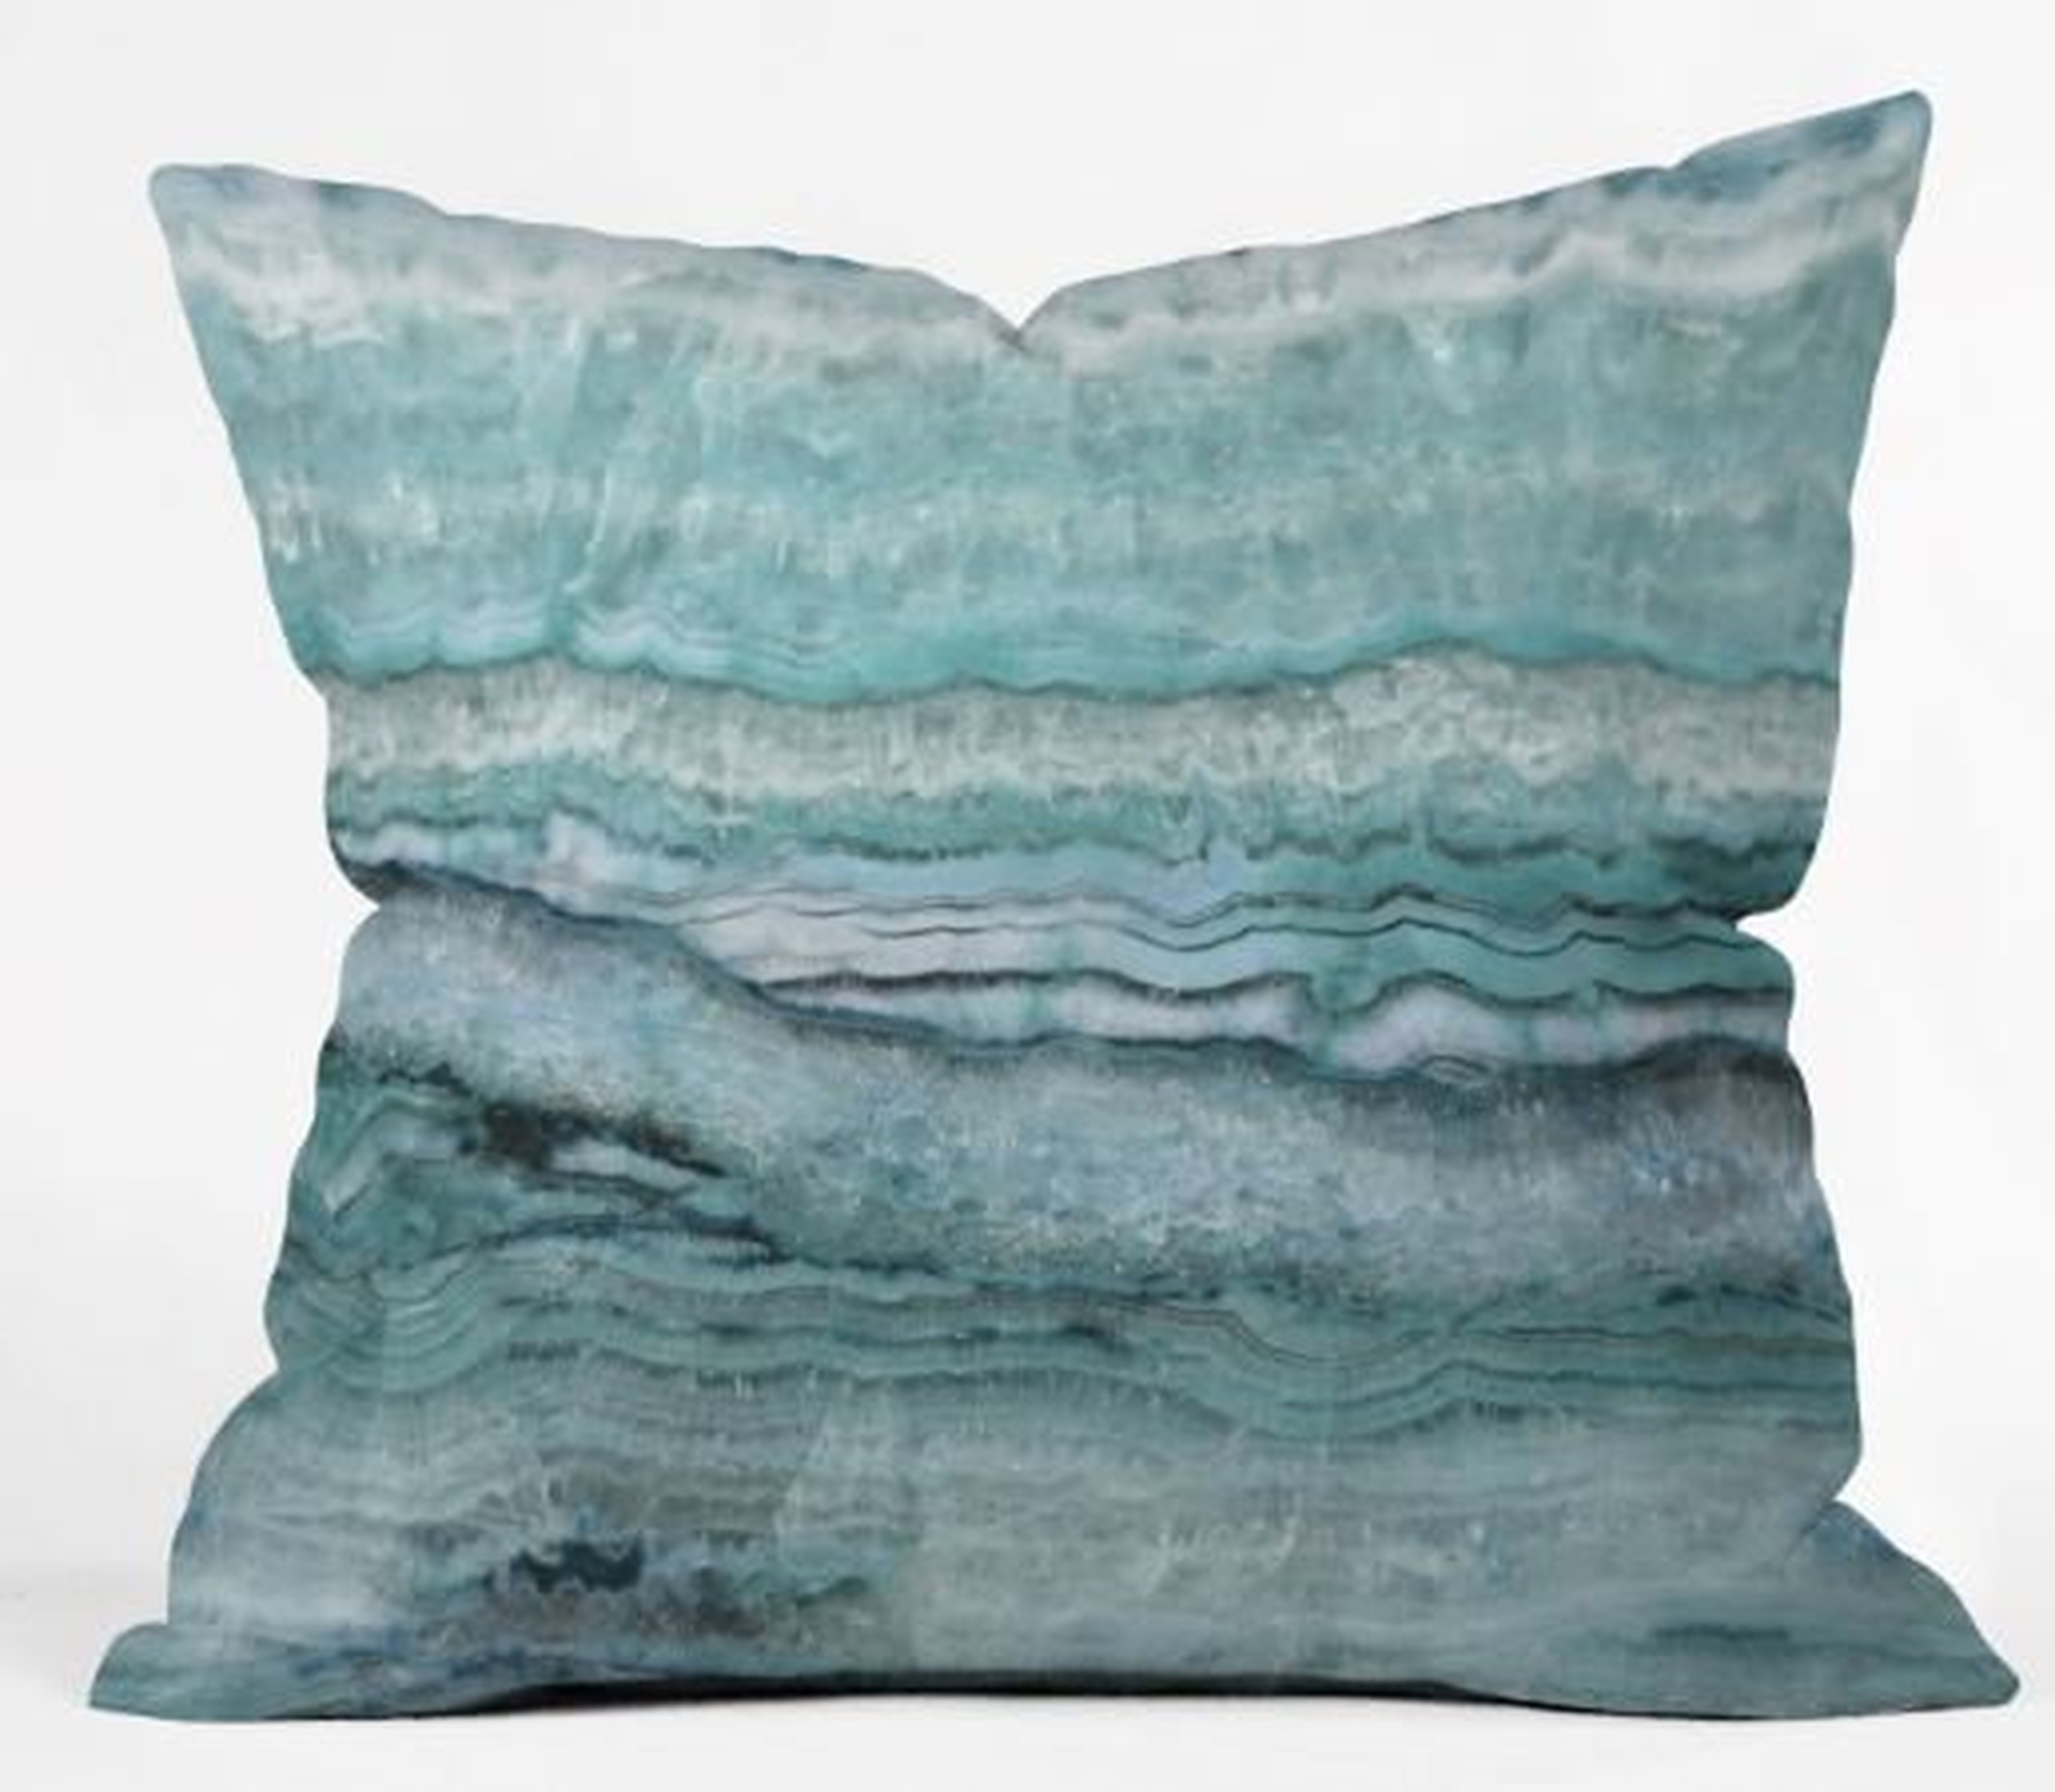 Mystic Stone Aqua Teal Pillow - 18"x18" - Wander Print Co.